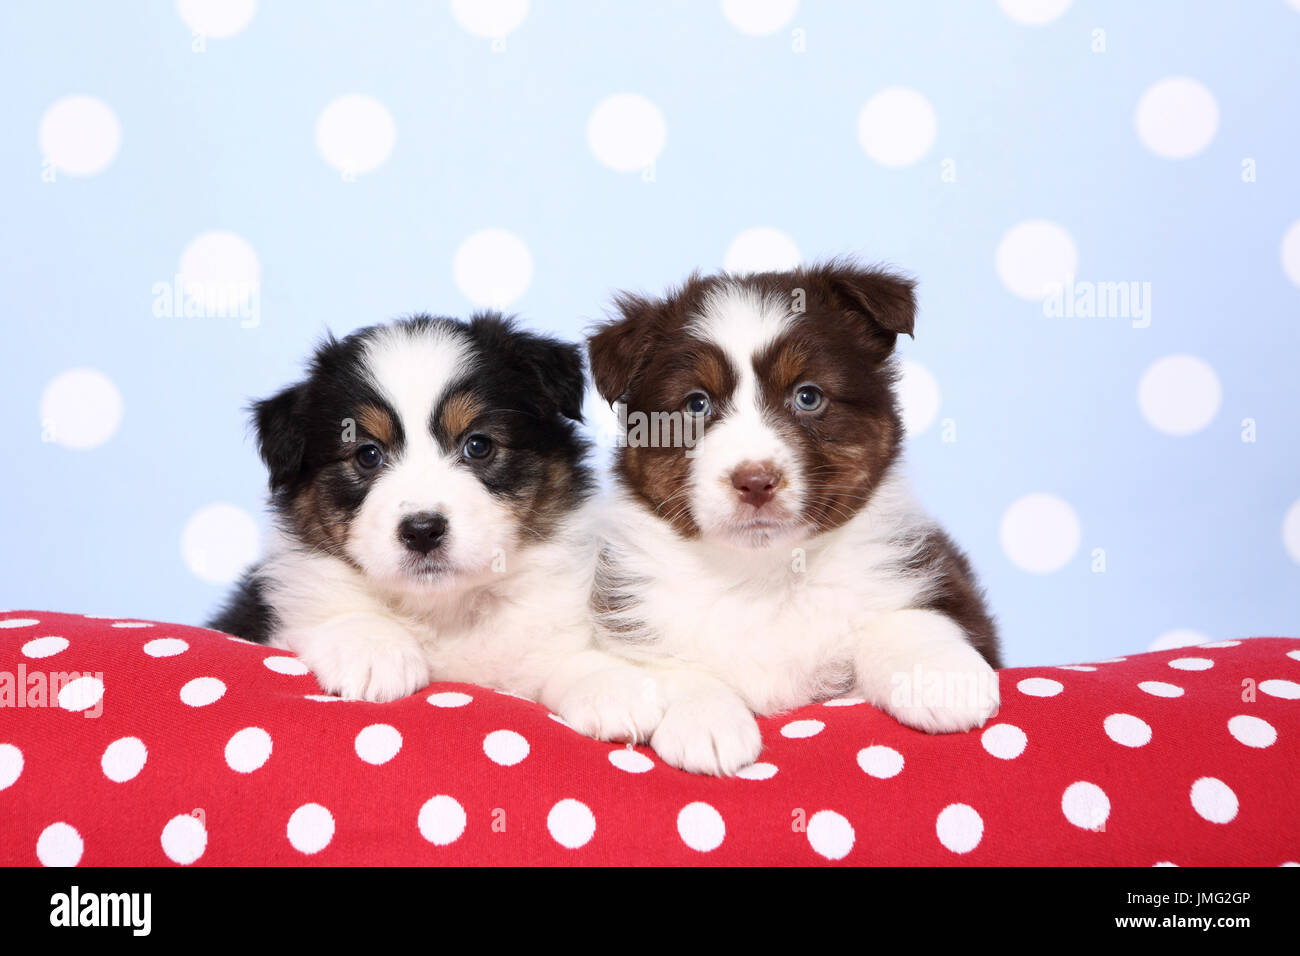 Pastore australiano. Due cuccioli (6 settimane di età) giacente su un rosso cushiont con il bianco a pois. Studio Immagine contro uno sfondo blu con il bianco a pois. Germania Foto Stock